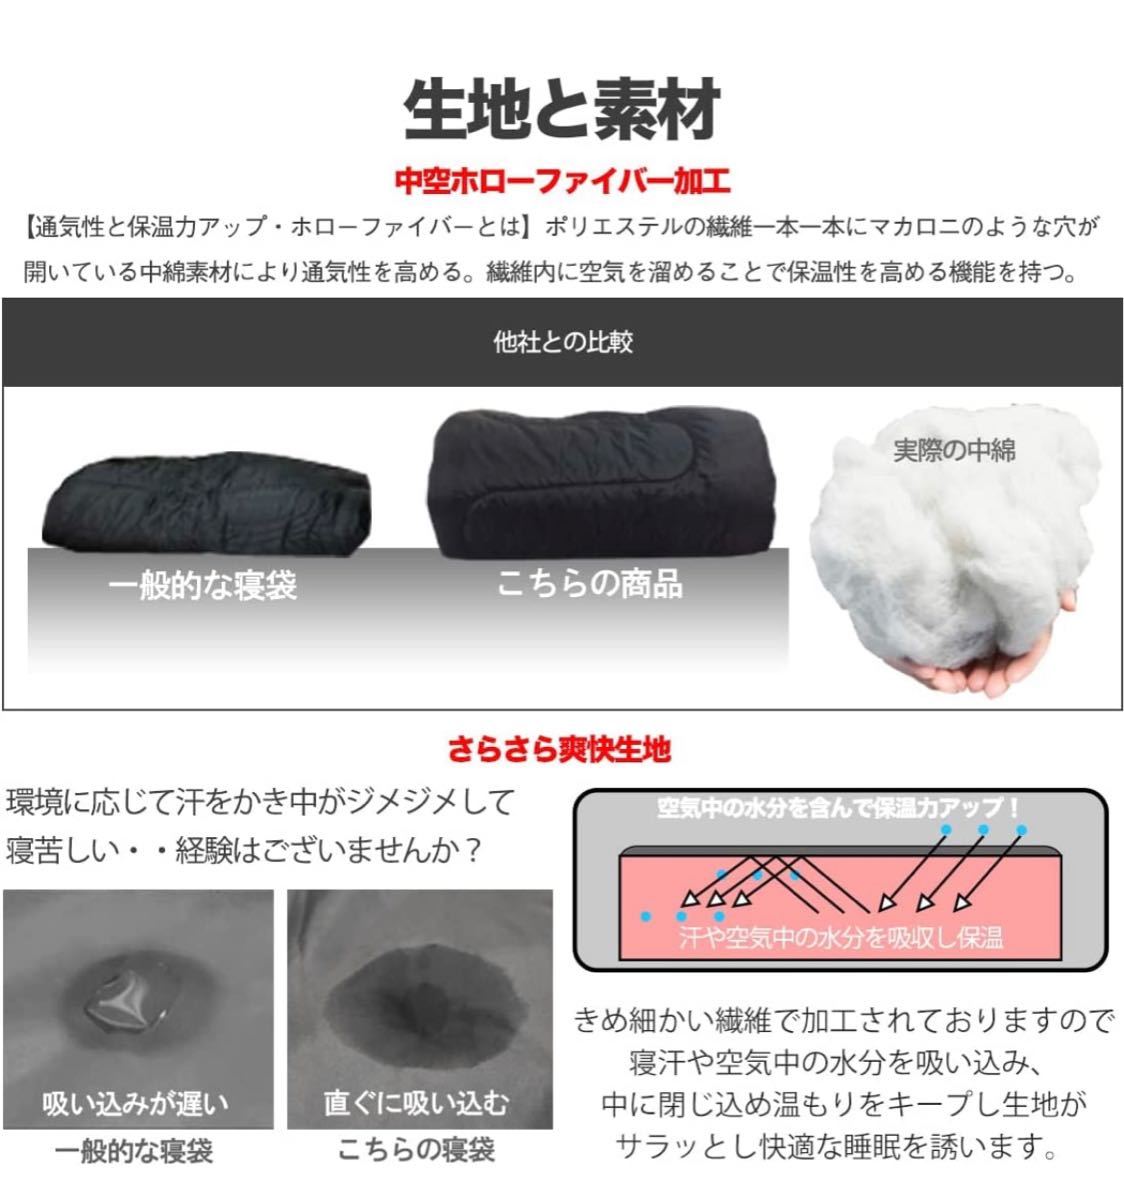 寝袋 シュラフ 封筒型 デジタル迷彩 コンパクト 冬用 夏用 最低使用温度 -15℃